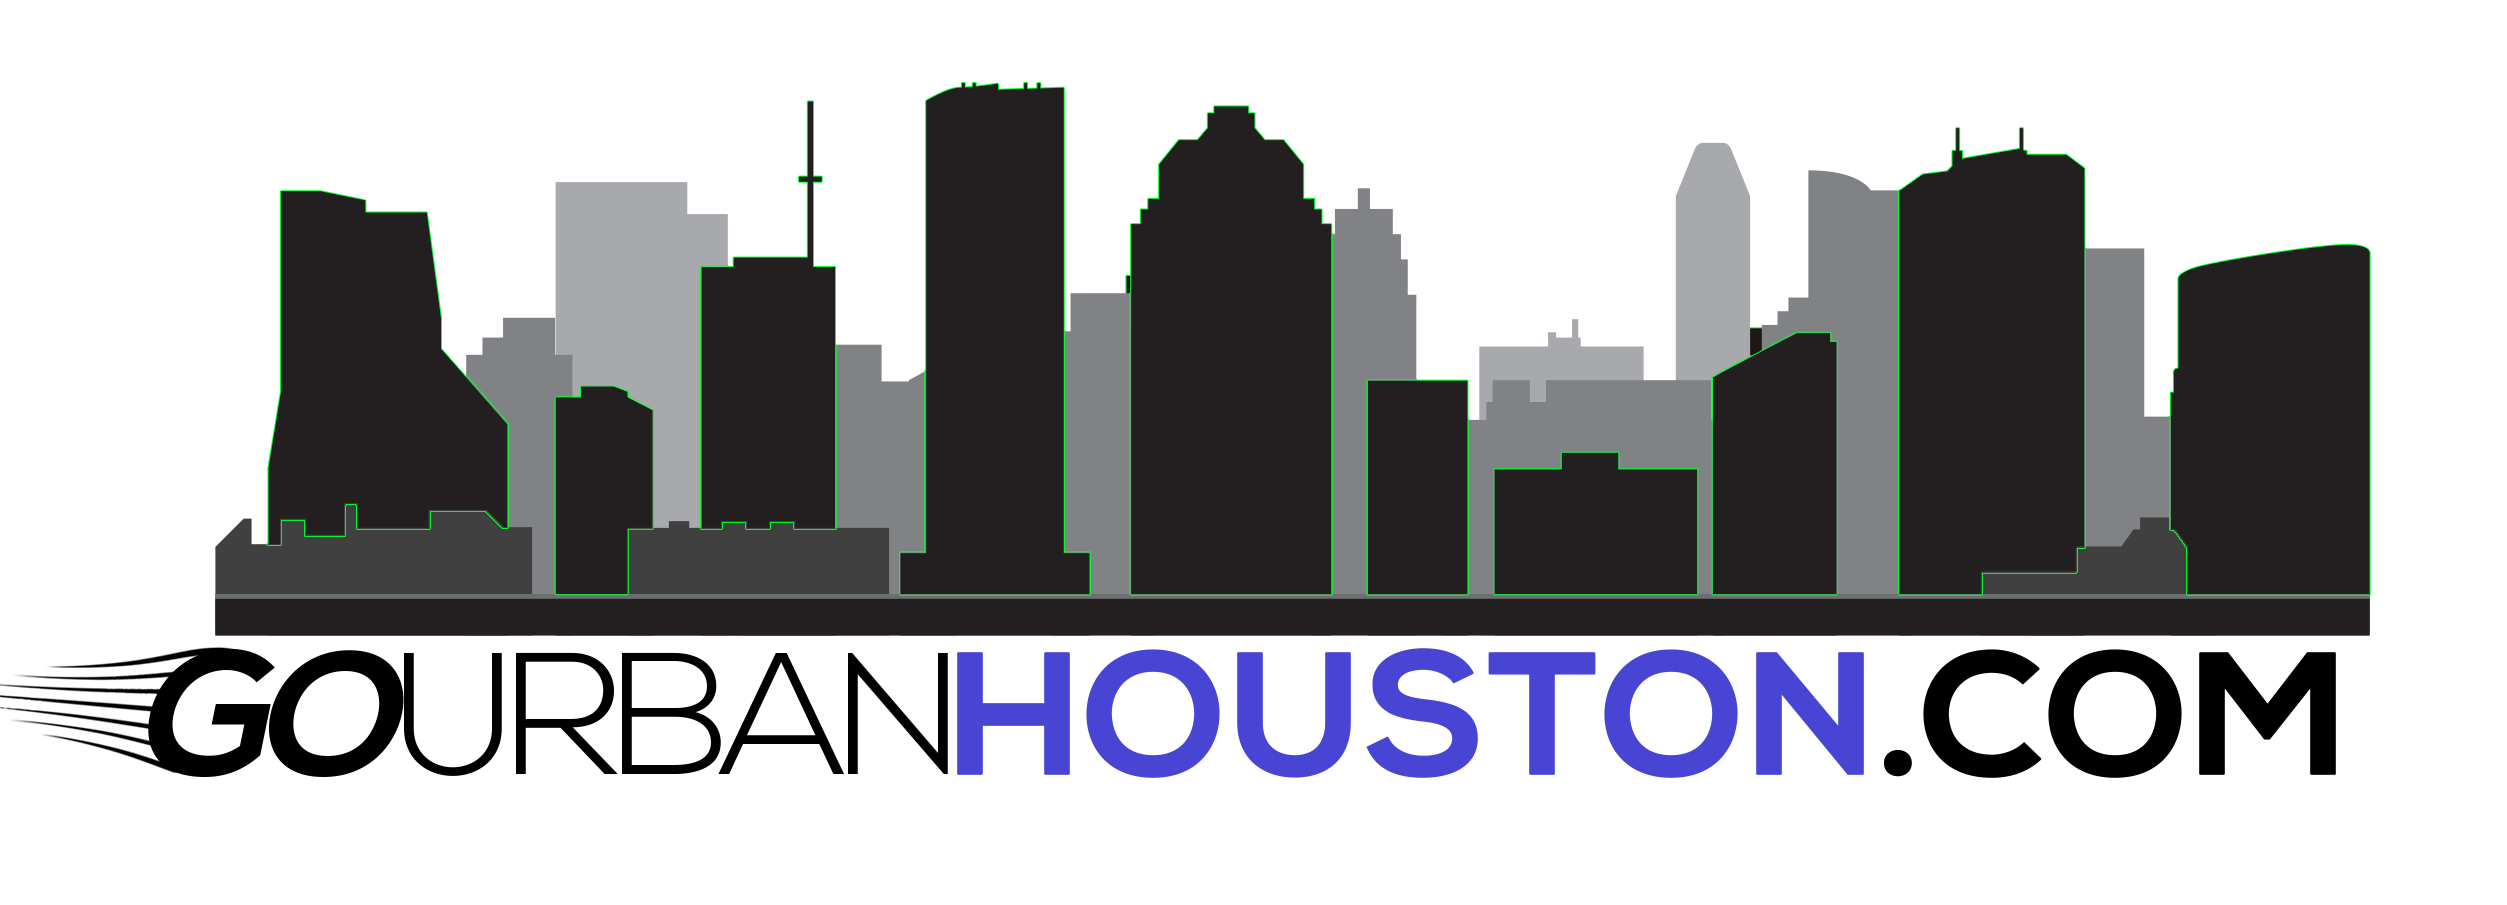 Go Urban Houston